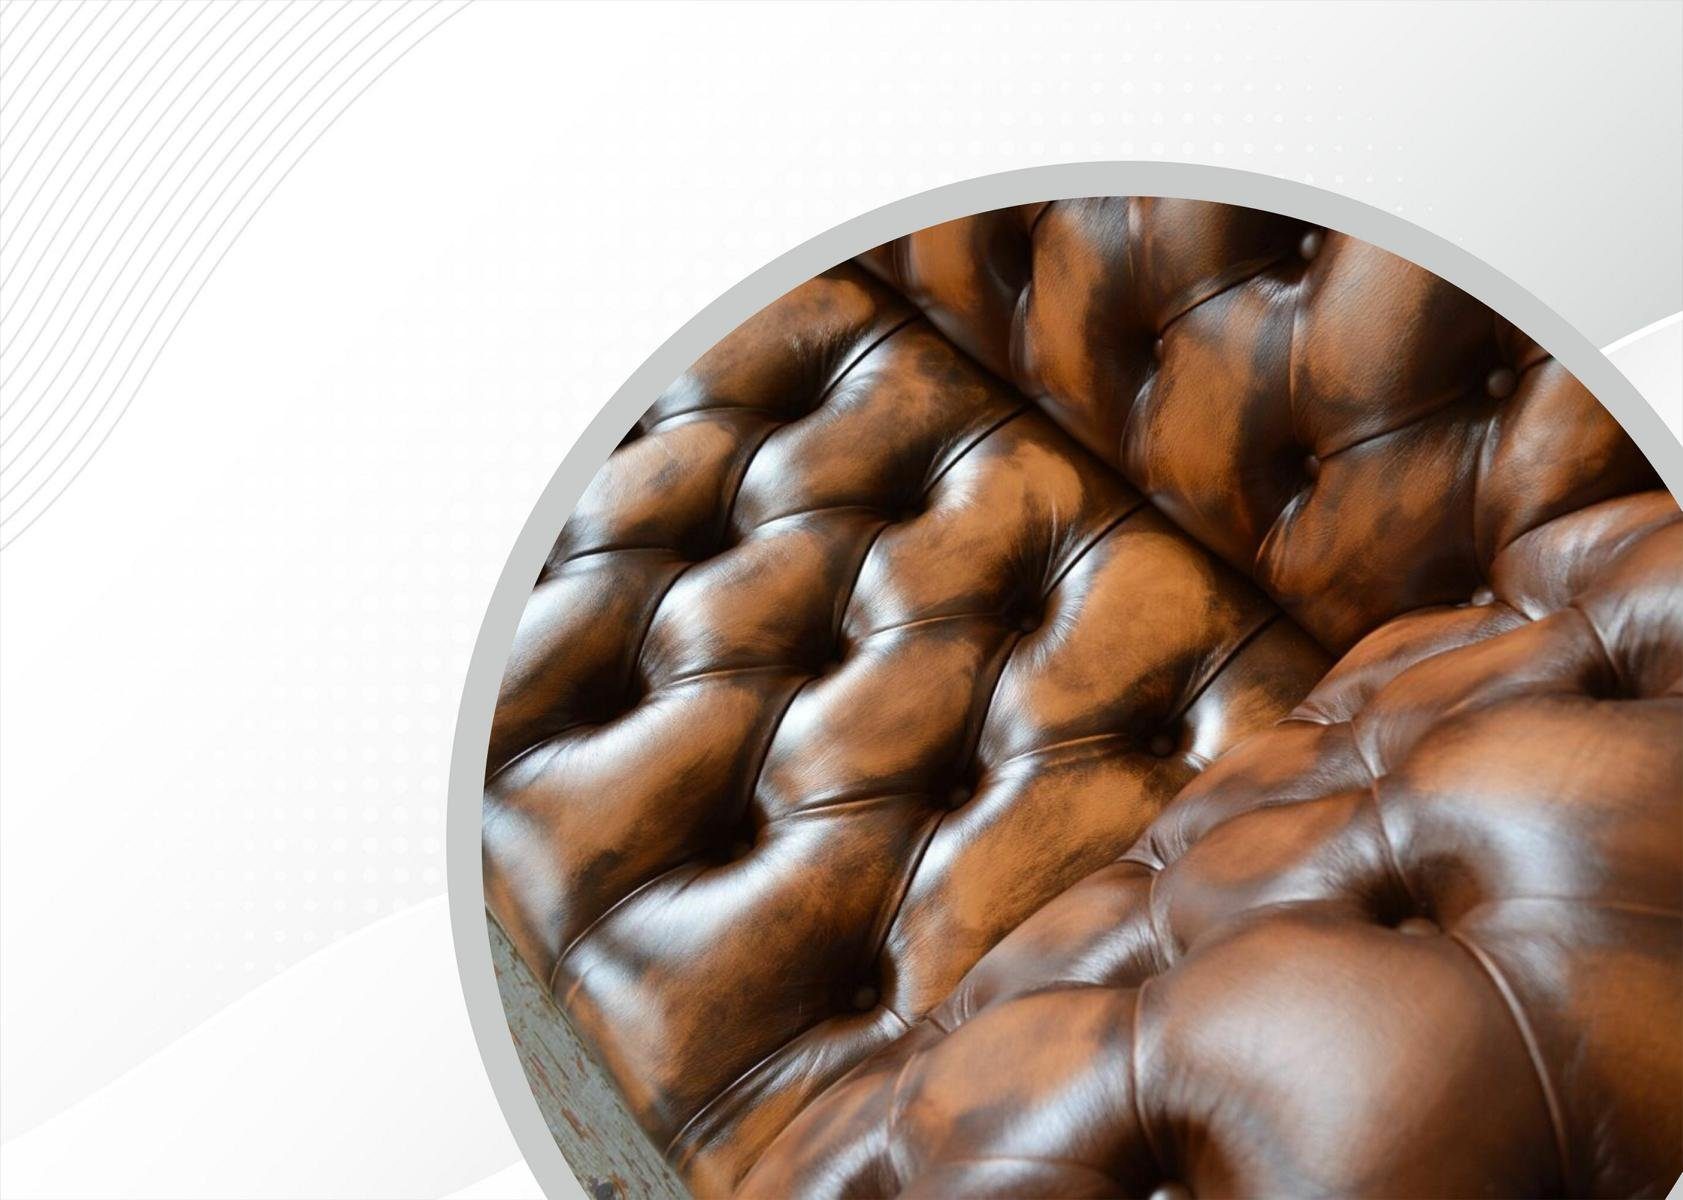 3 Knöpfen. Sofa Design Chesterfield Die JVmoebel mit Rückenlehne Sitzer 225 Couch cm, Chesterfield-Sofa